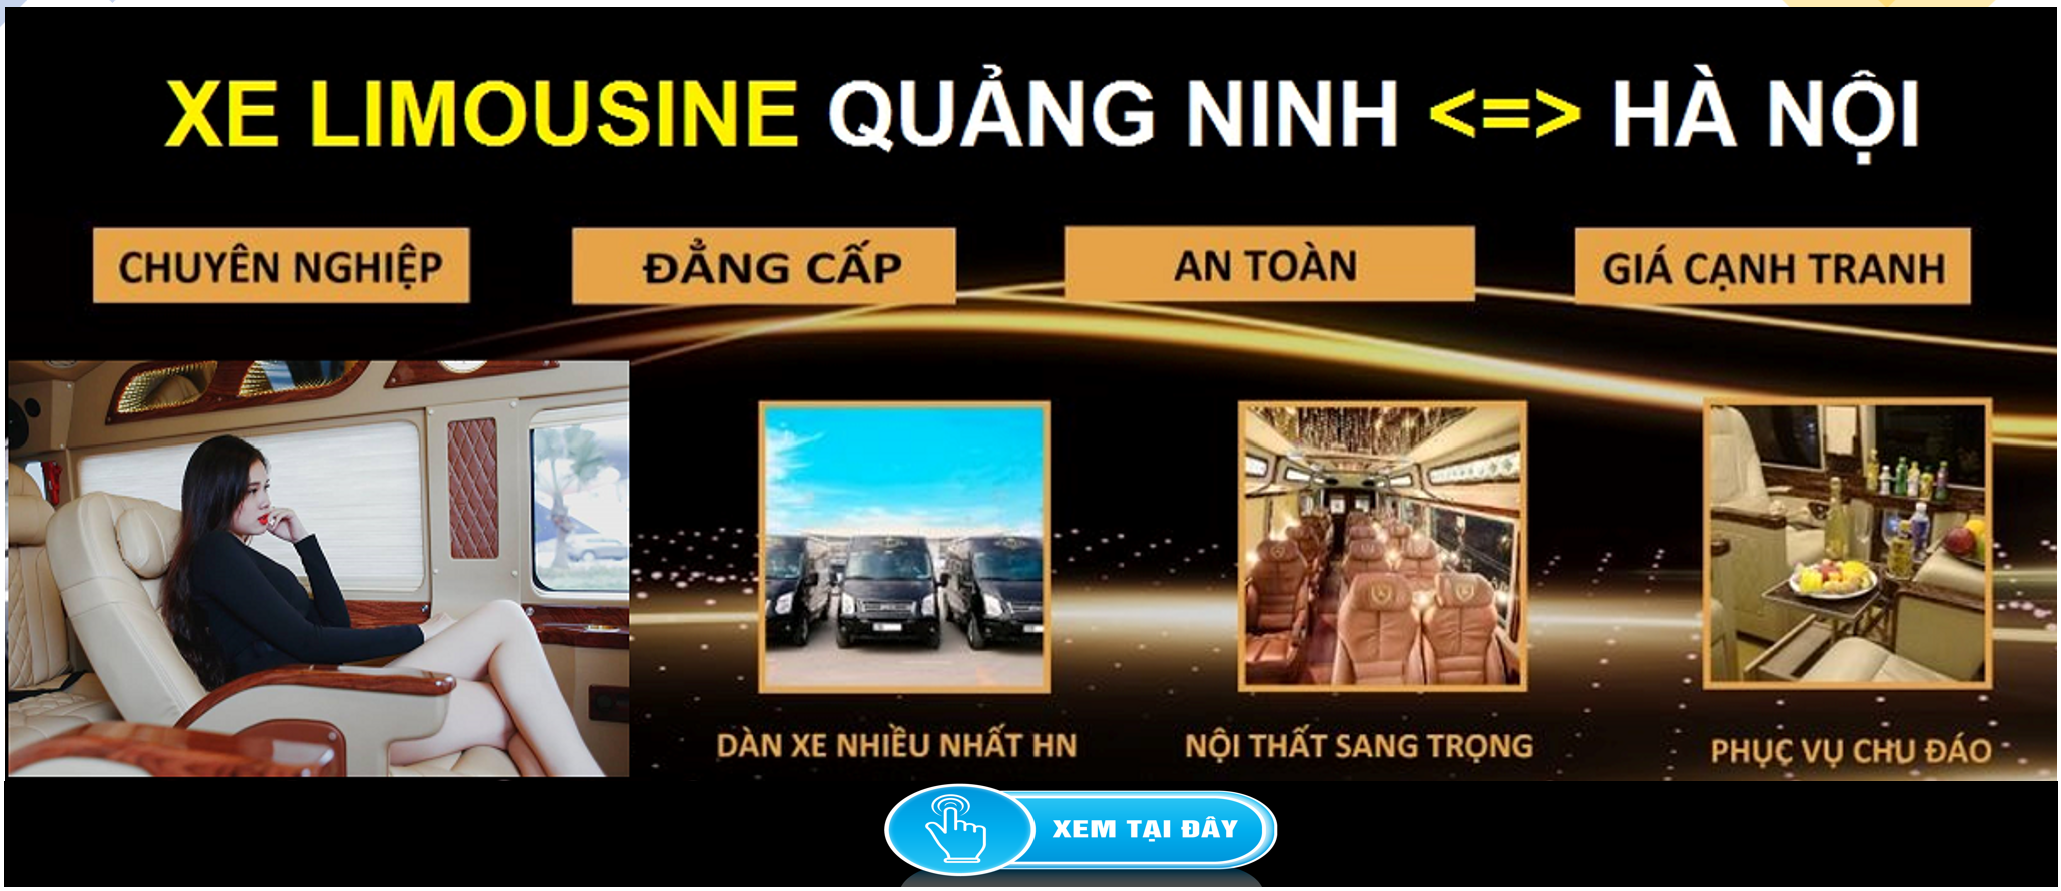 Xe Limousine Ha Noi Quang Ninh dua don tai nha 1d - Phong thủy xe hơi - Chọn màu hợp mệnh